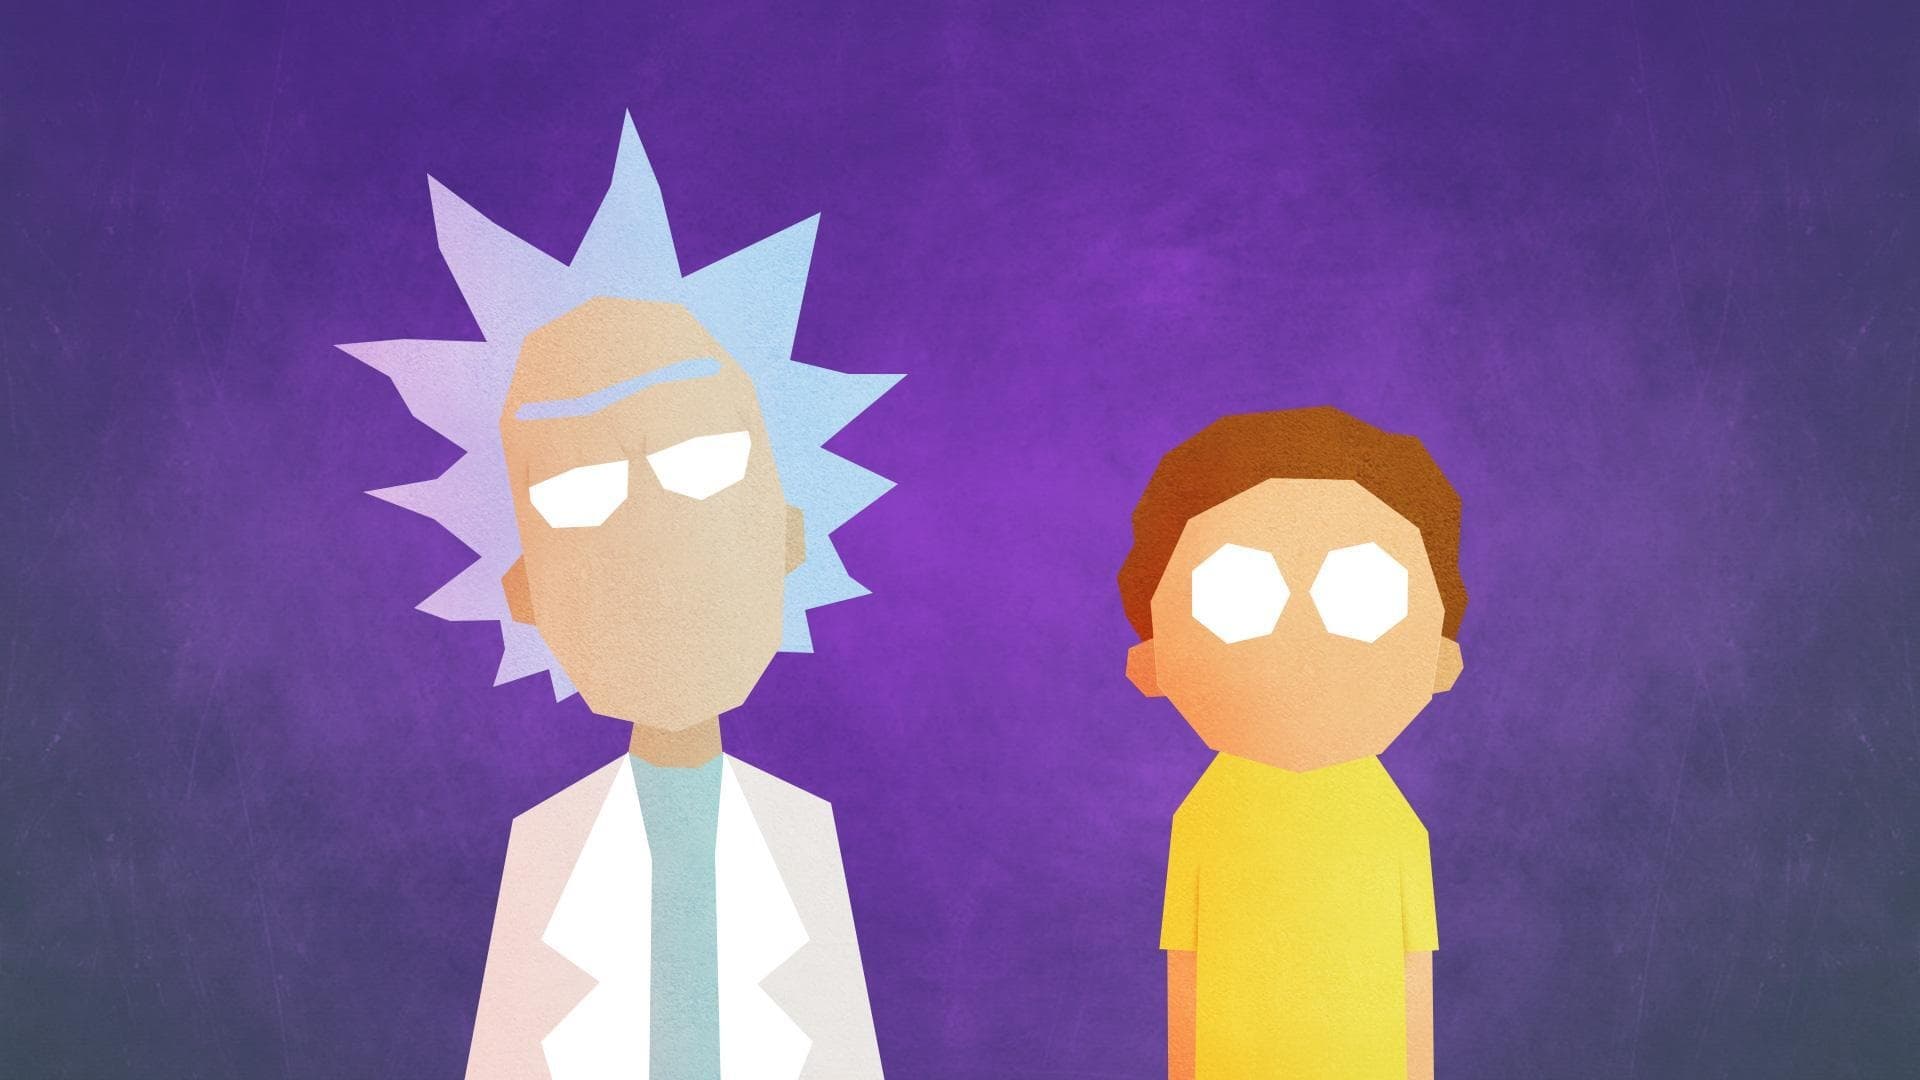 Rick and Morty - Season 1